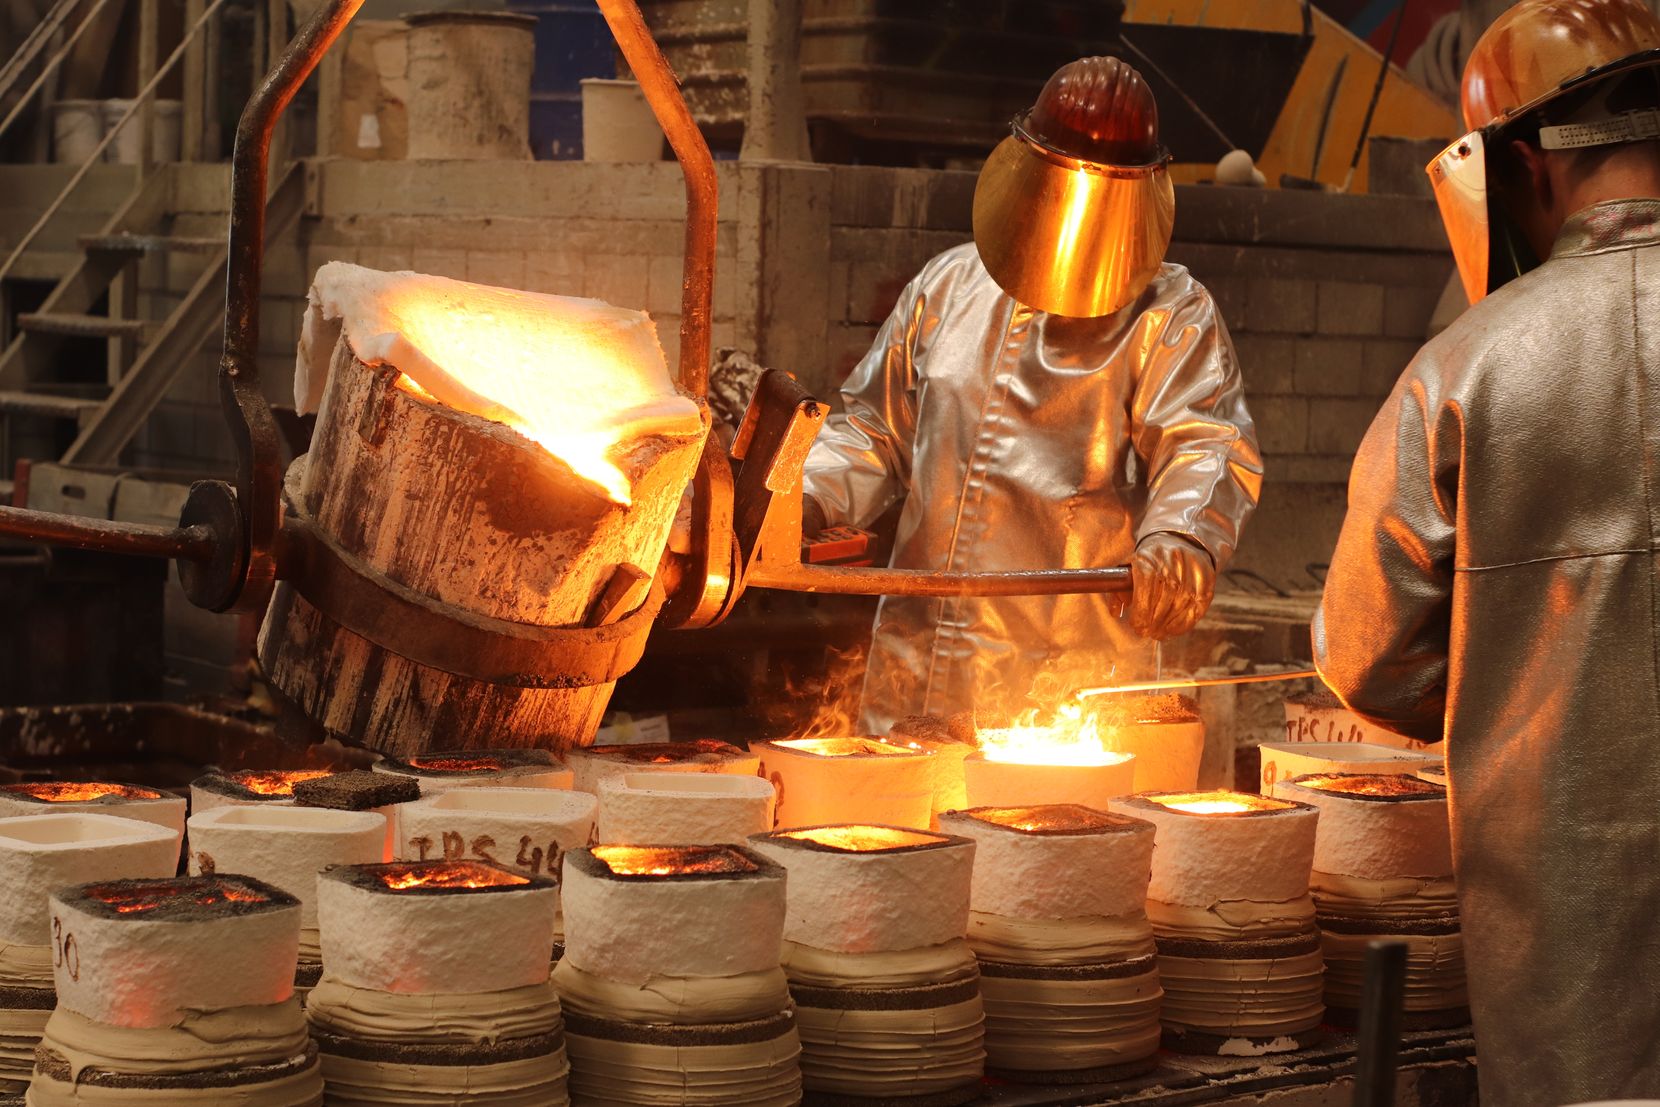 Arbeiter giessen flüssiges Metall in Gussformen.